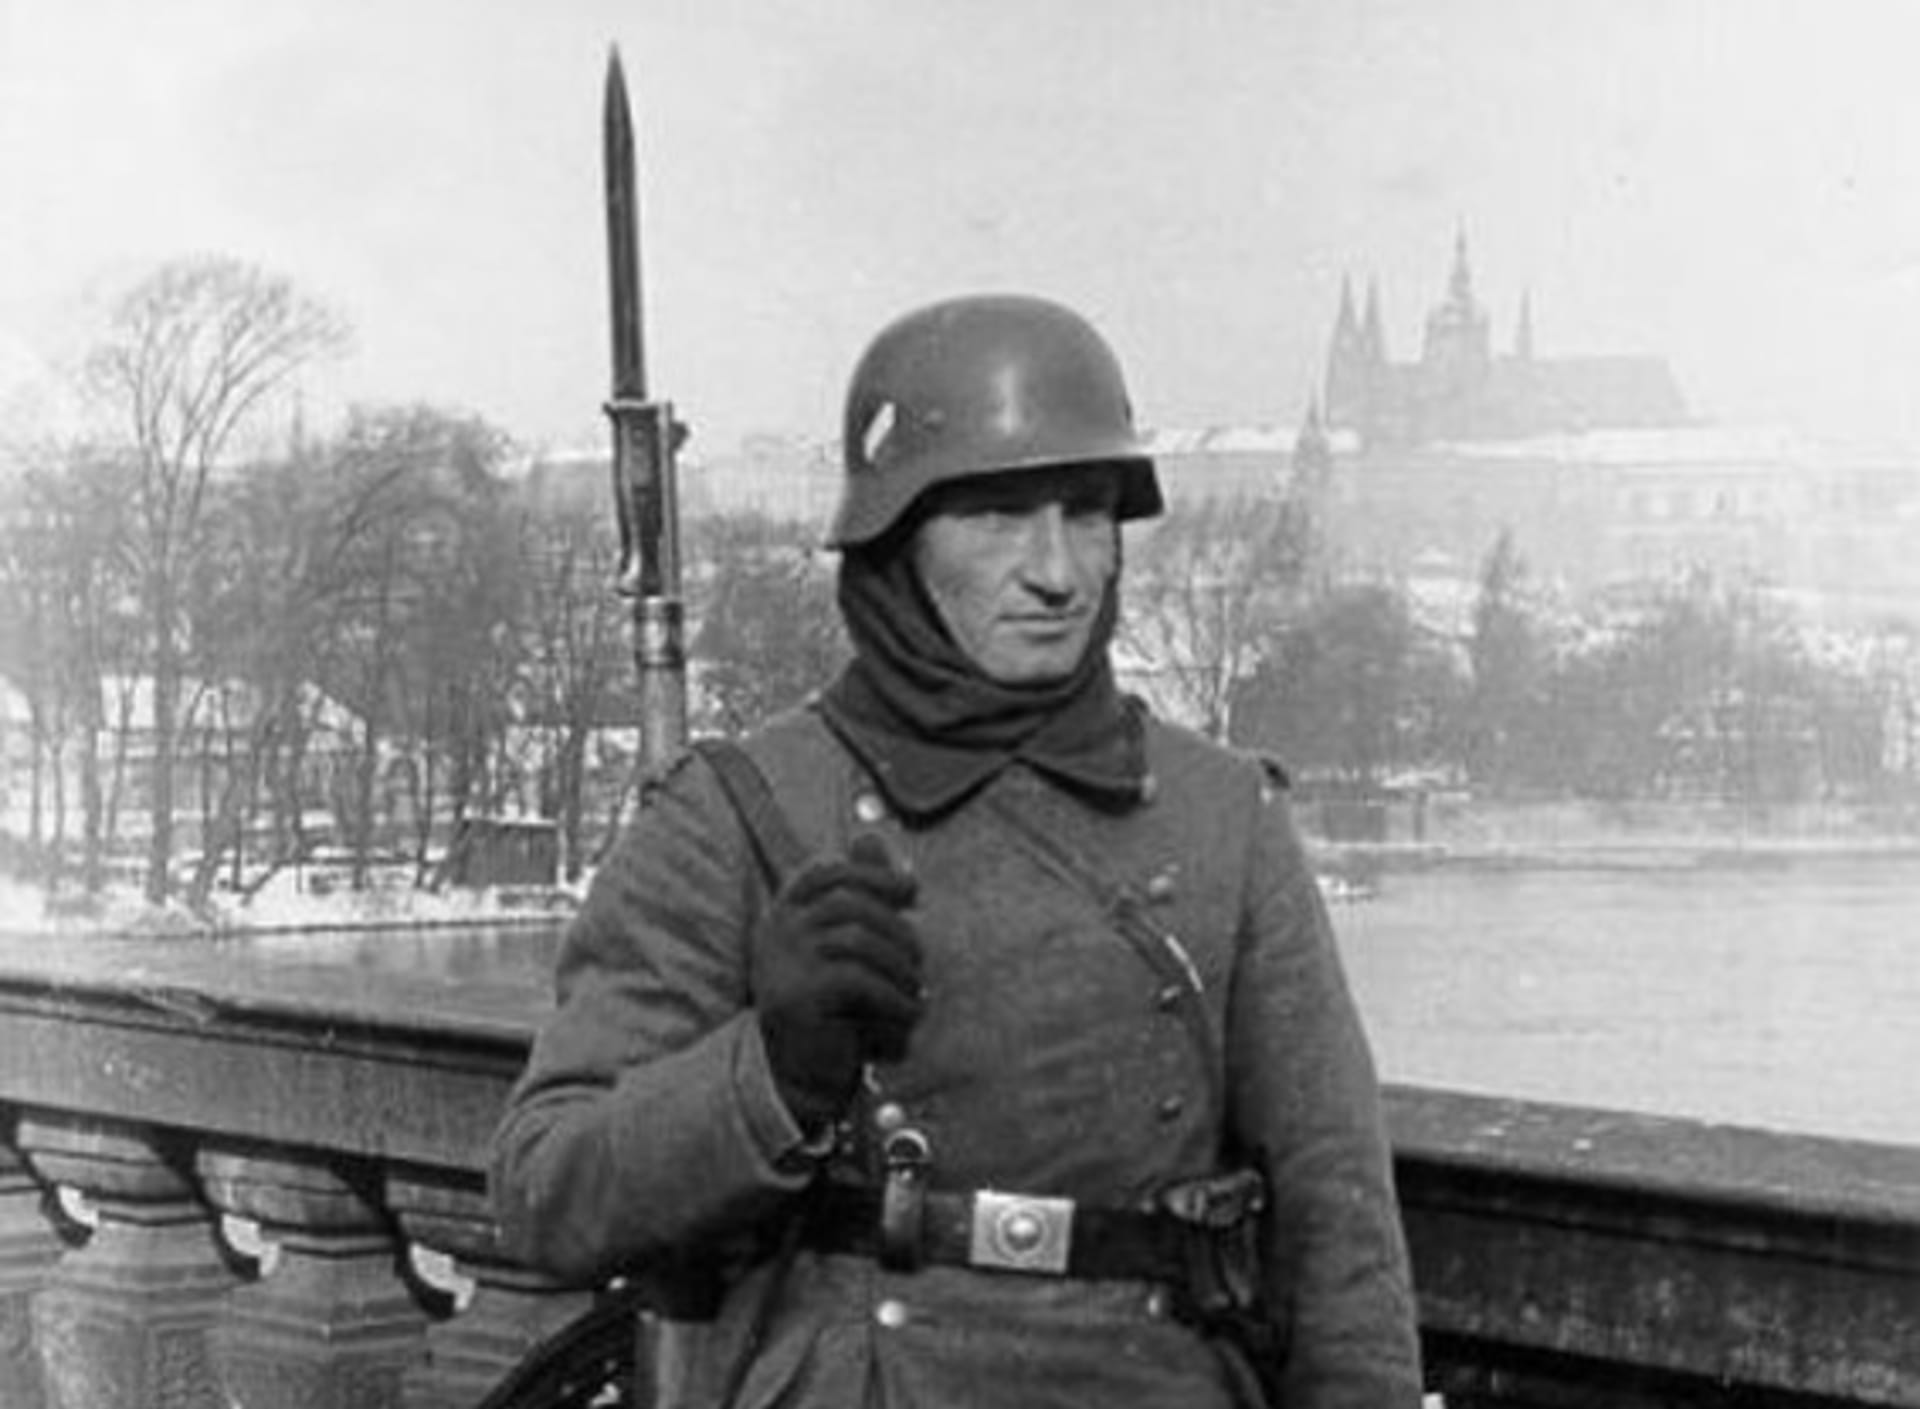 Tohle následovalo jen několik měsíců po Mnichově: Mašírování německého vojáka pod Pražským hradem.